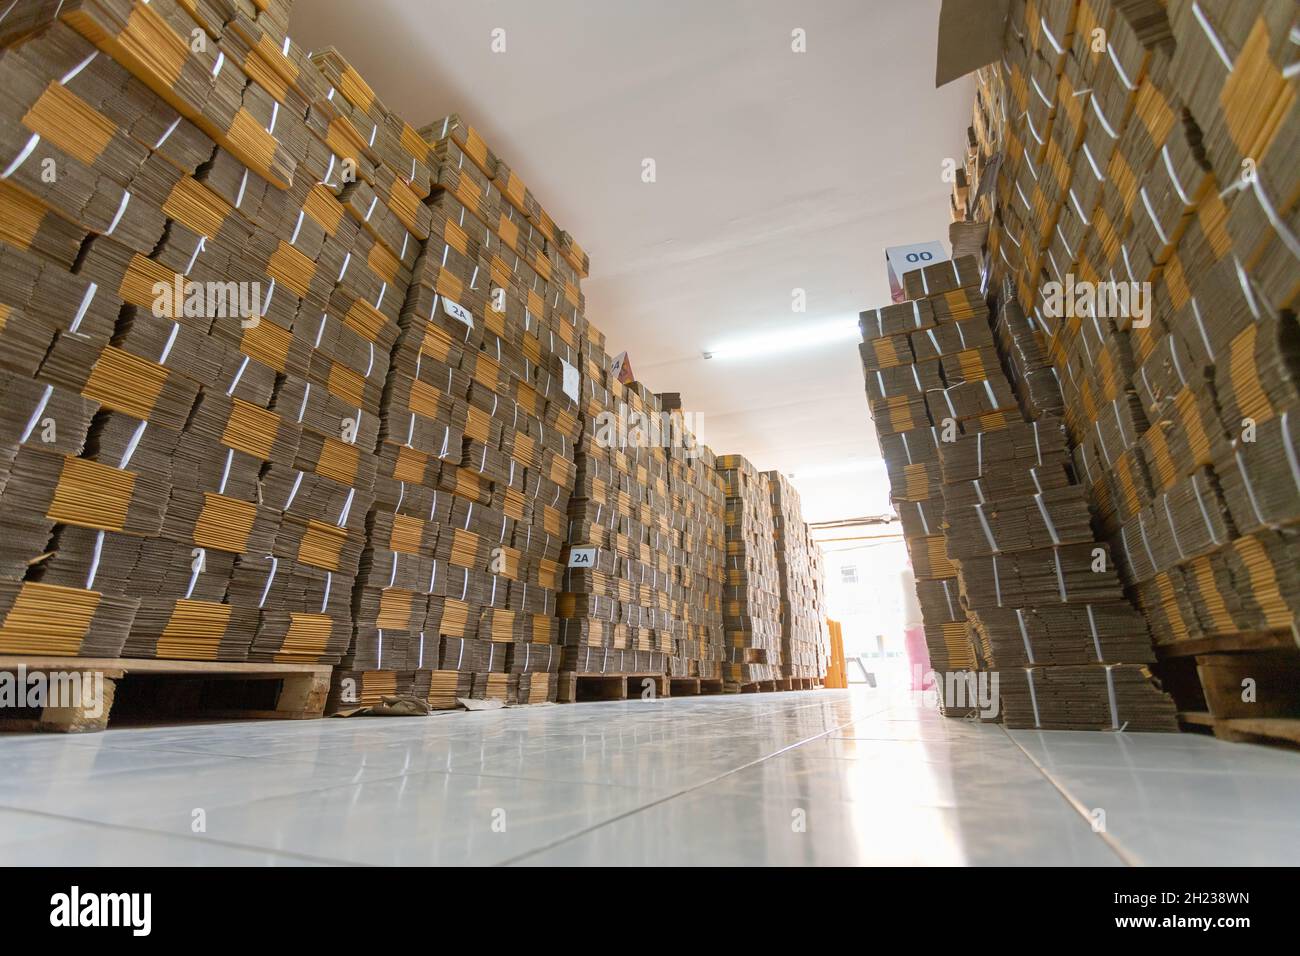 Reihe brauner Kartons, Regalstapelanordnung von Kartons in einem Lagerhaus. Stockfoto